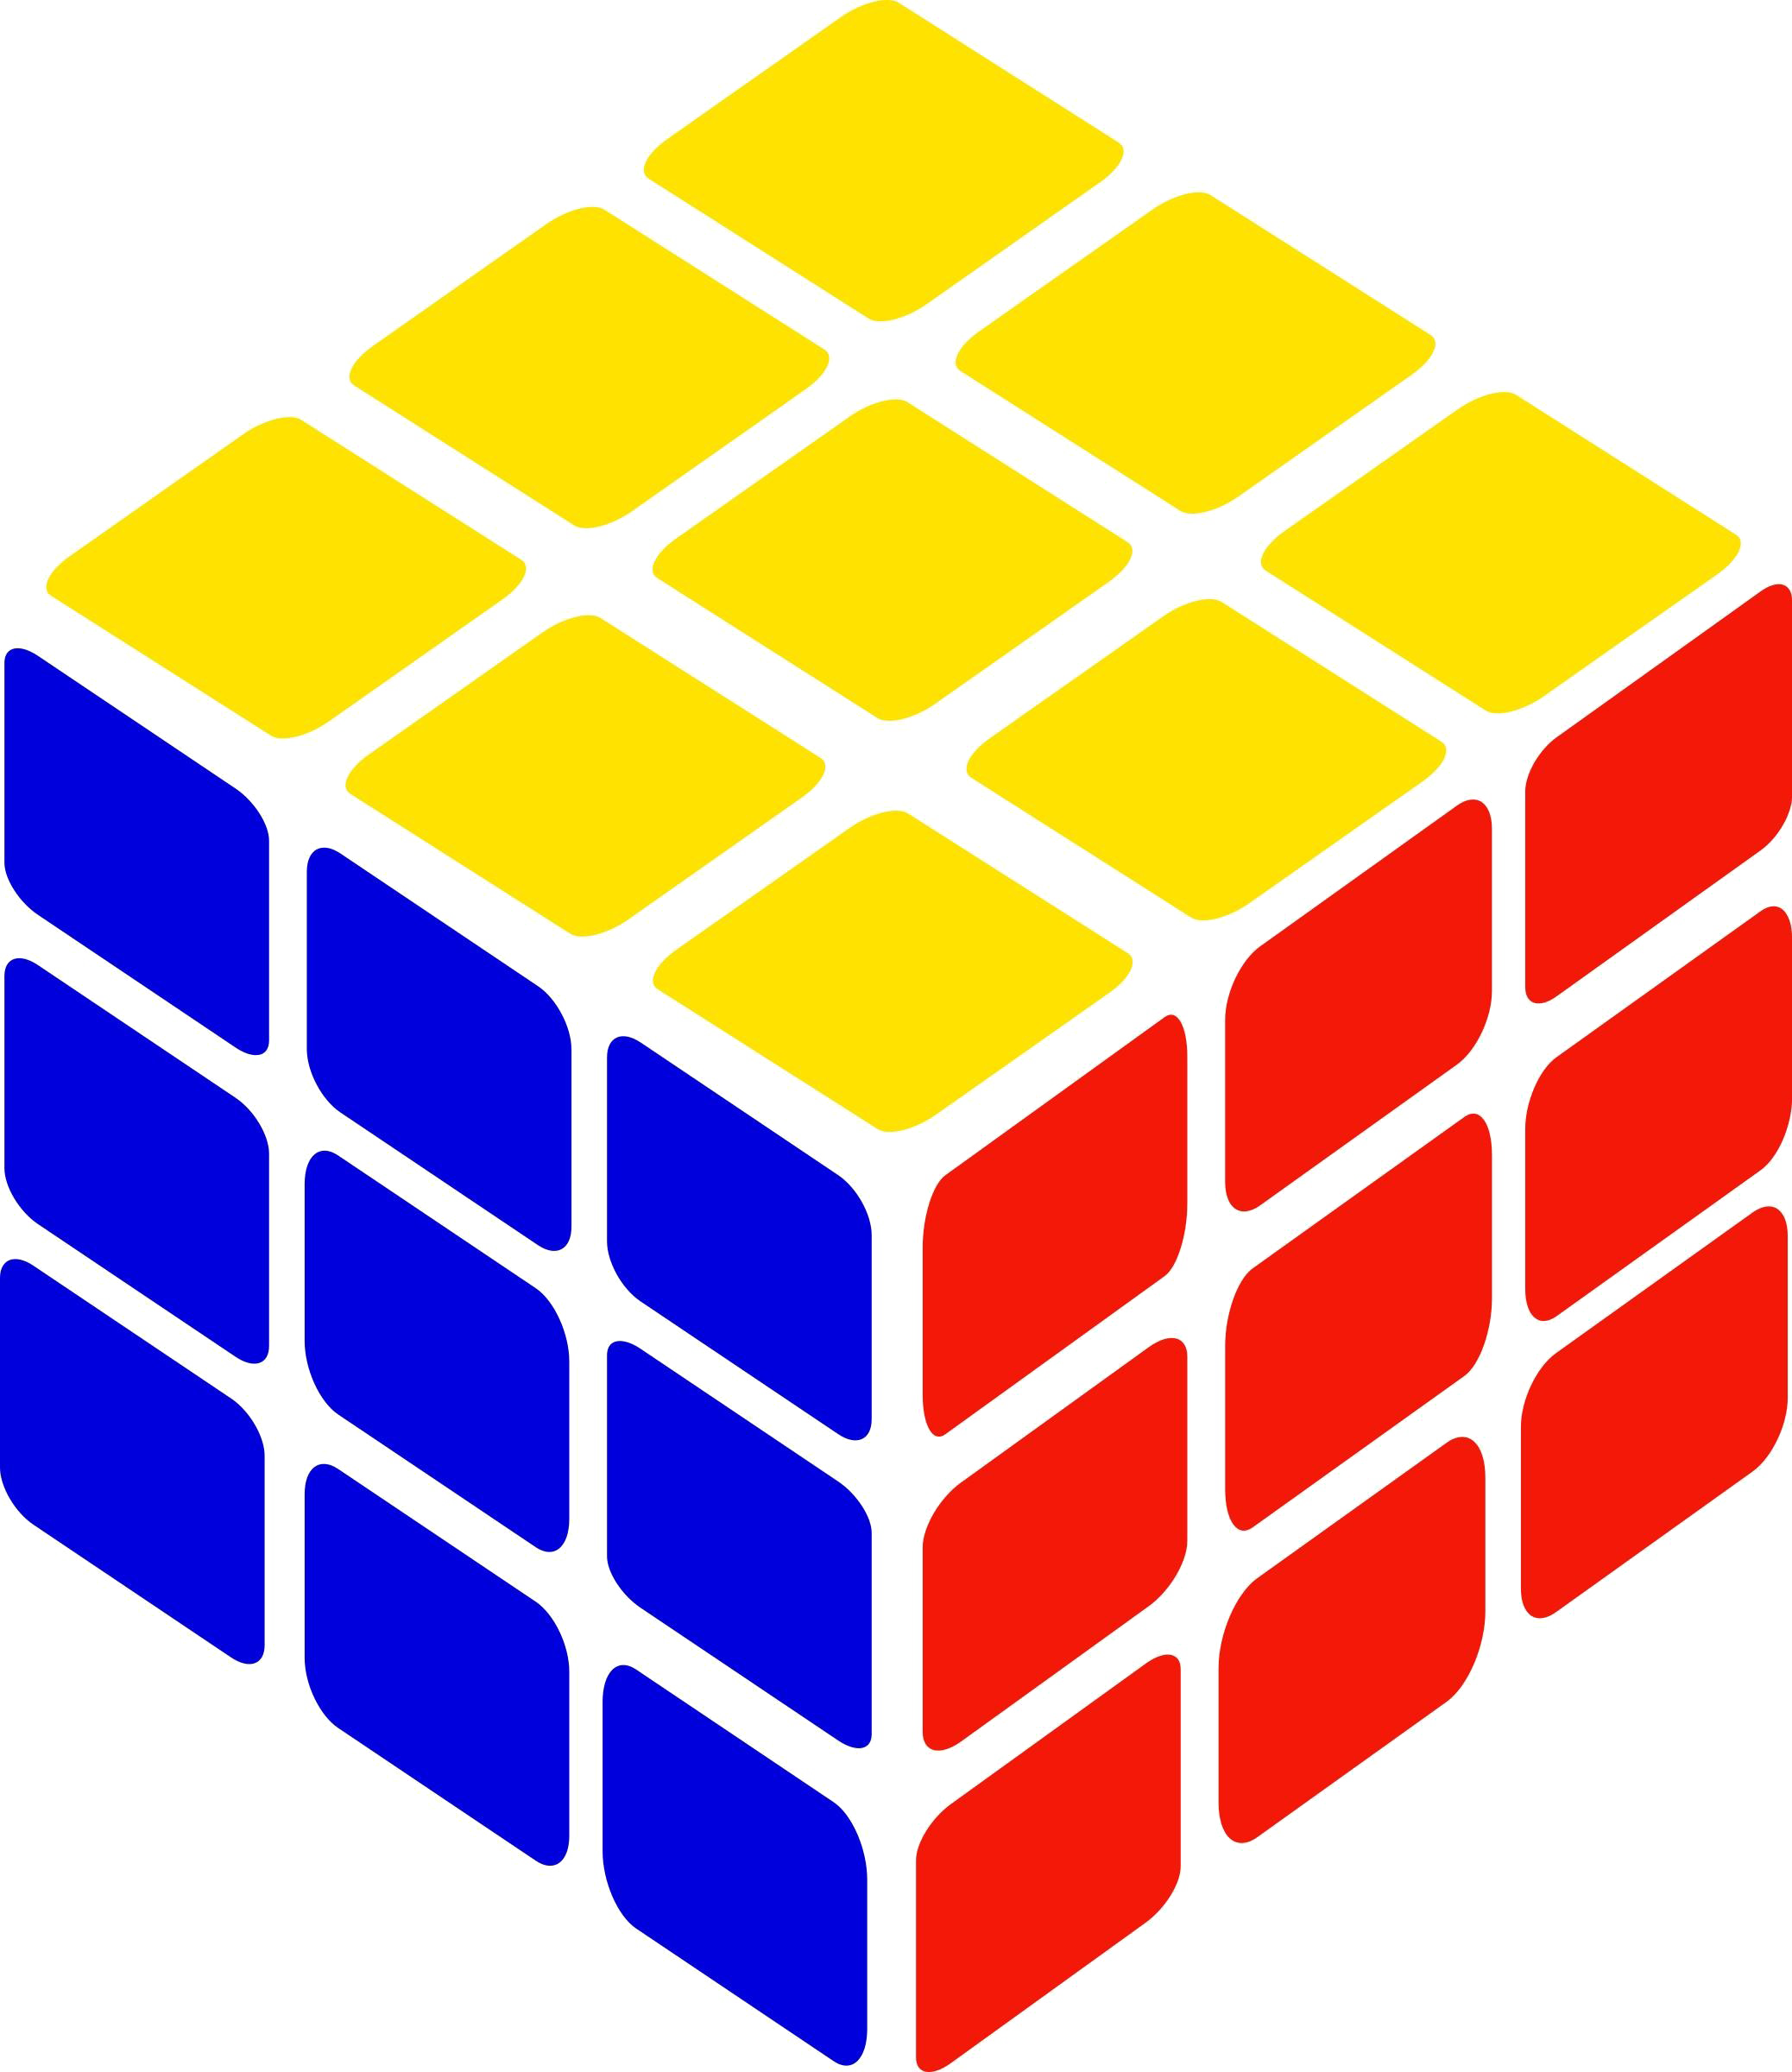 Rubix Cube Background